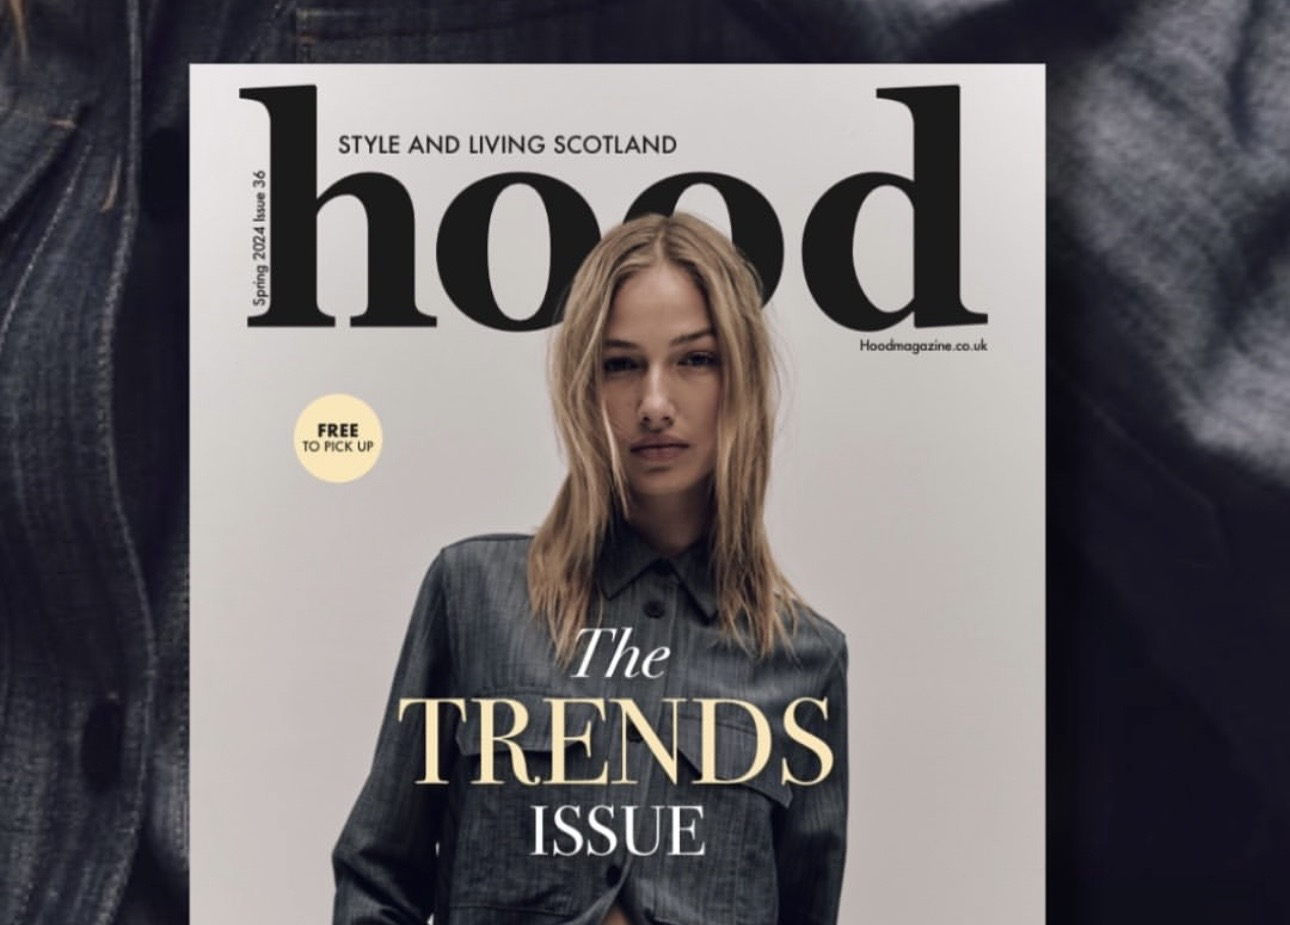 Hood Magazine Live: Fashion, Beauty and Beyond